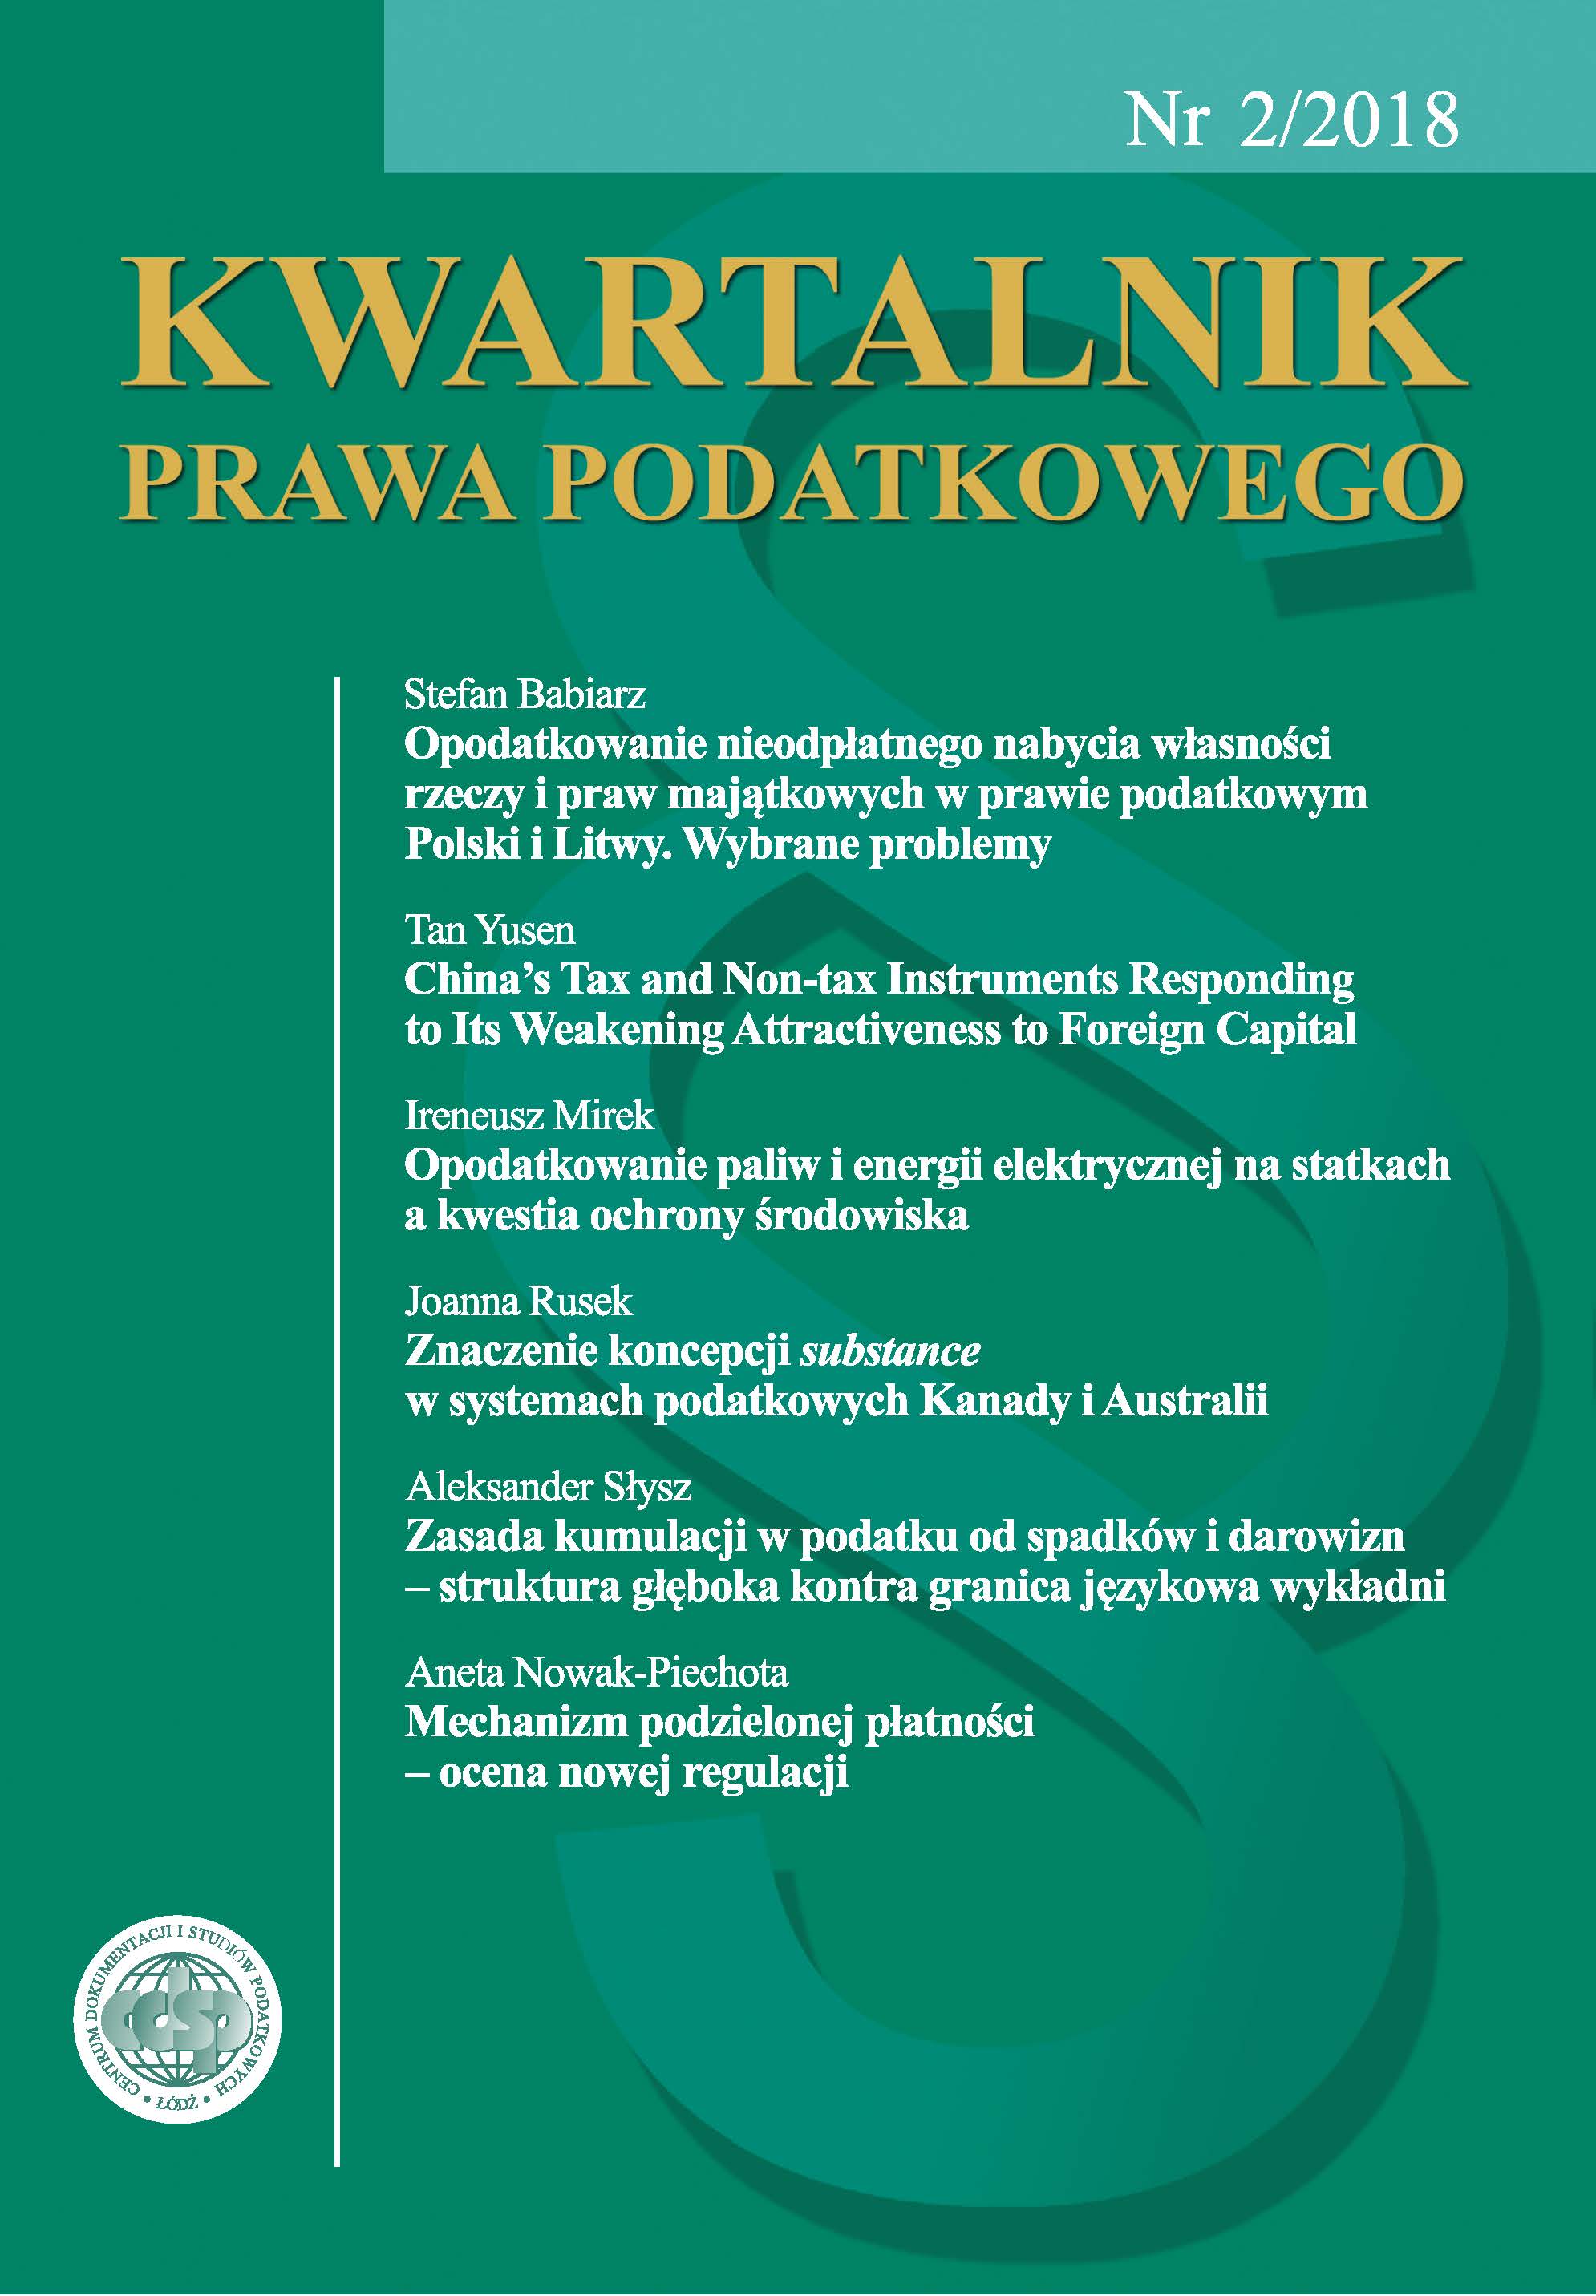 Opodatkowanie nieodpłatnego nabycia własności rzeczy i praw majątkowych w prawie podatkowym Polski i Litwy. Wybrane problemy